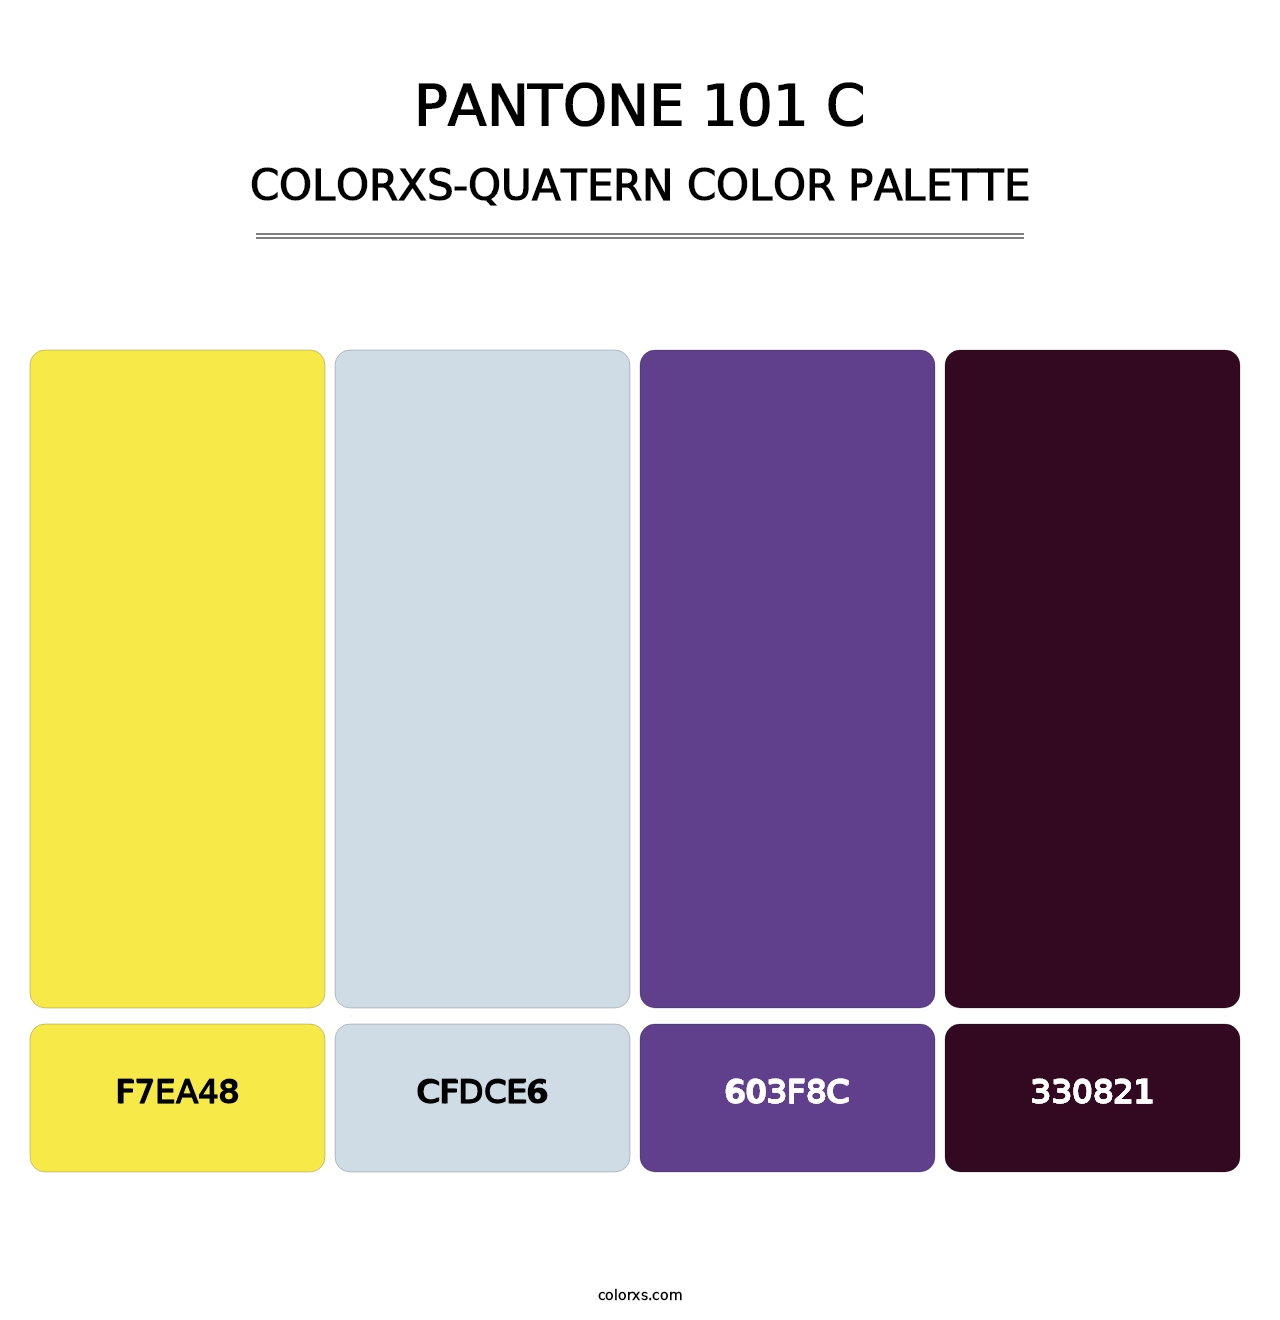 PANTONE 101 C - Colorxs Quatern Palette